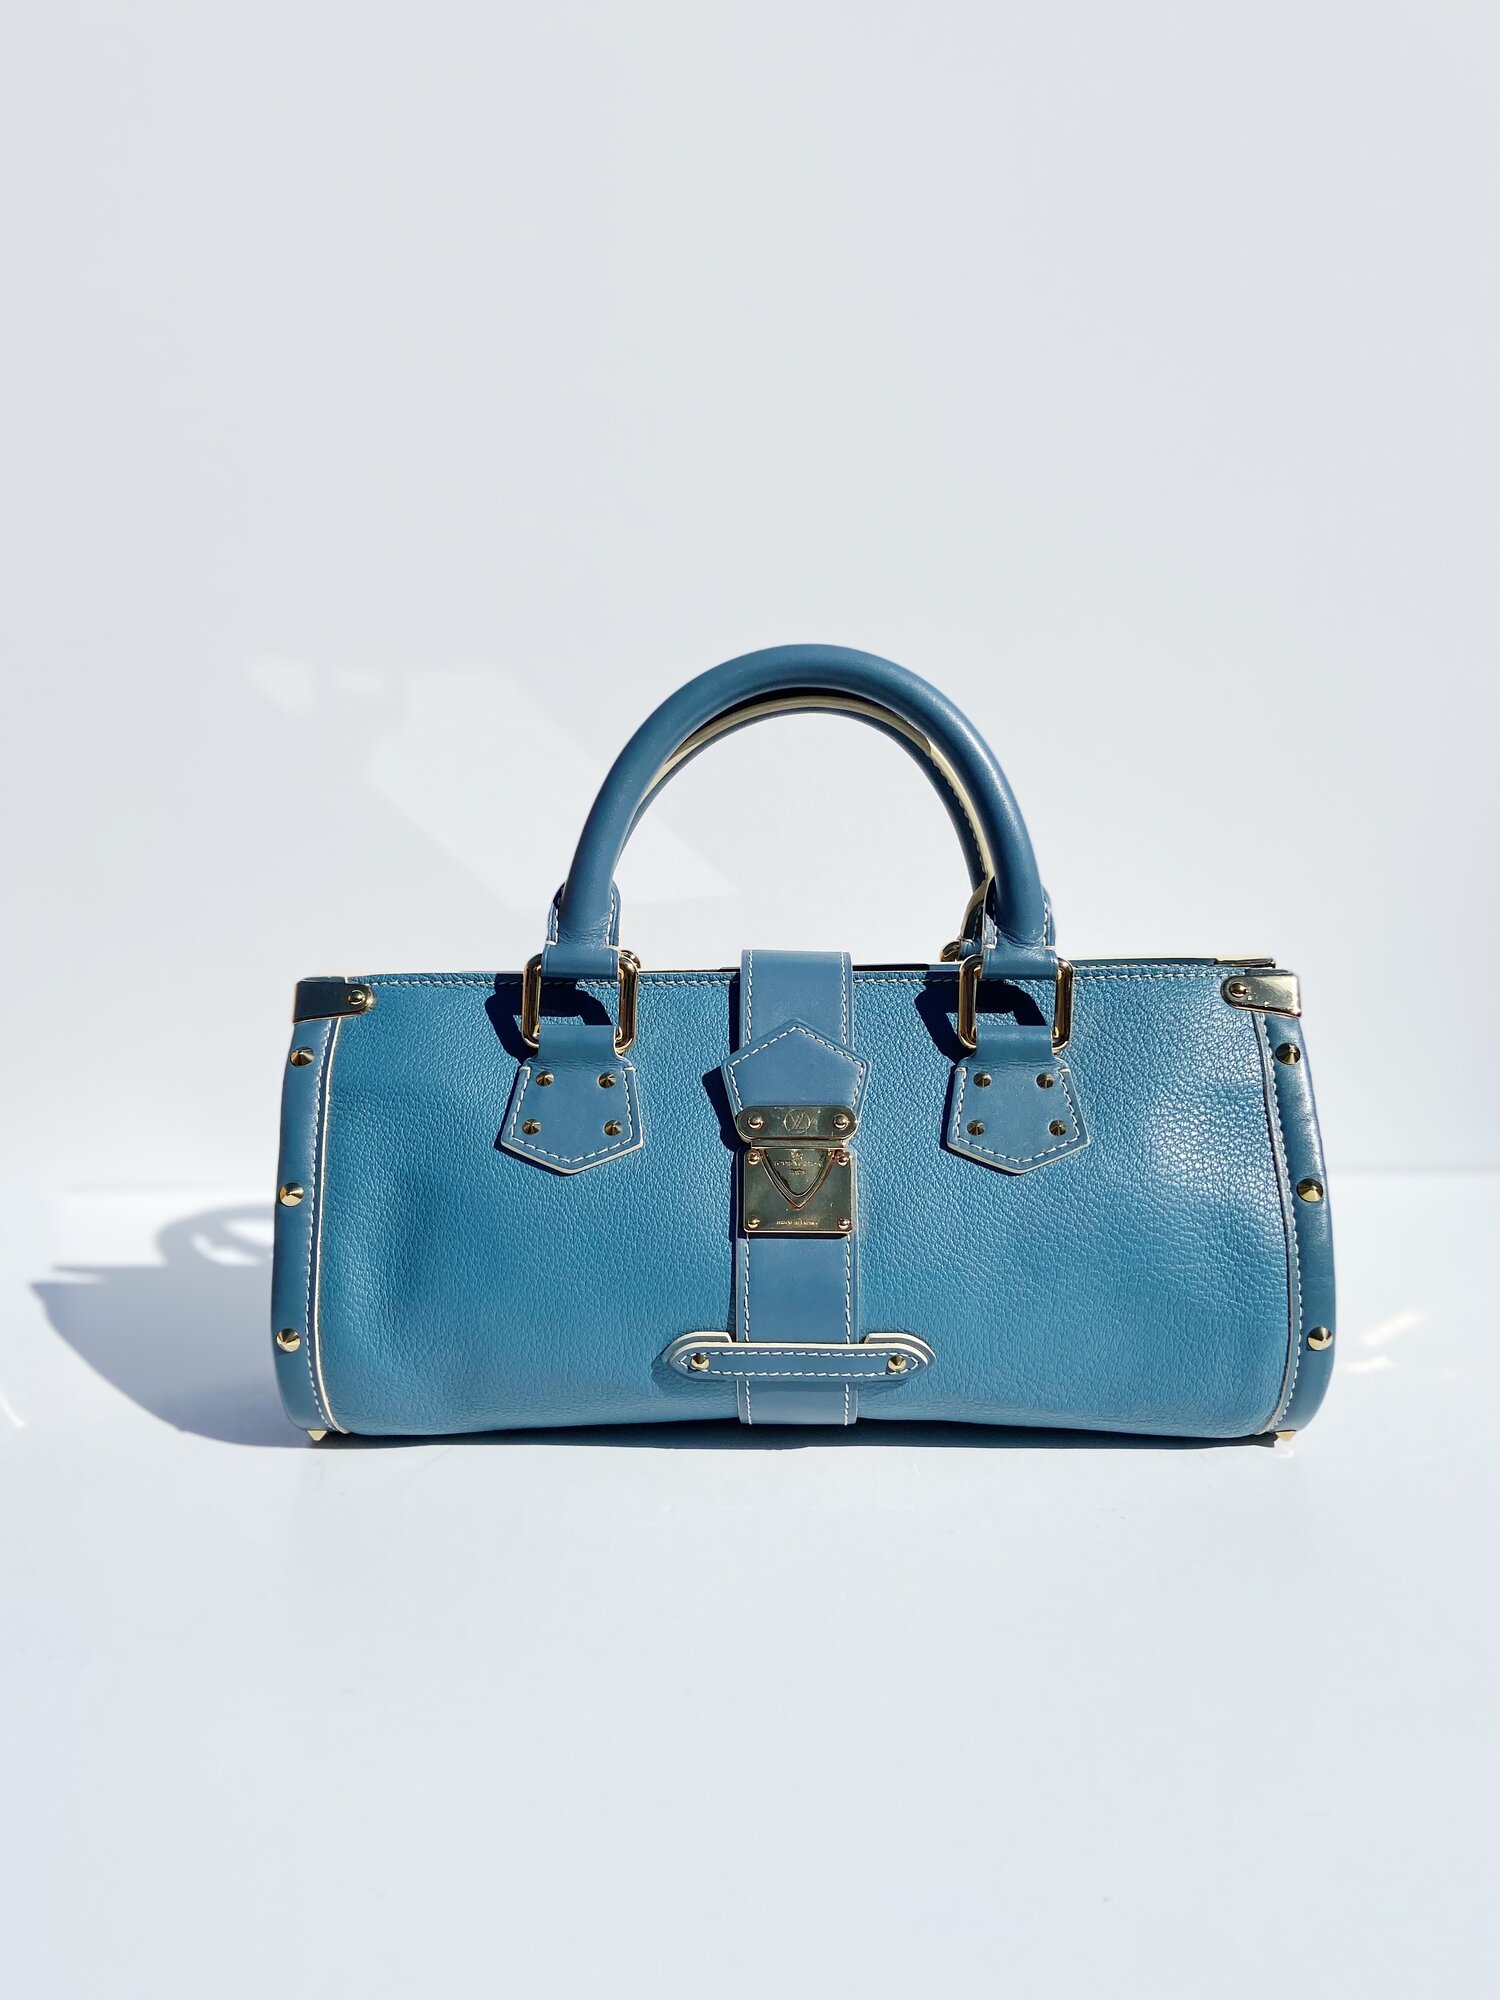 Louis Vuitton - Authenticated Néonoé Handbag - Leather Blue for Women, Very Good Condition